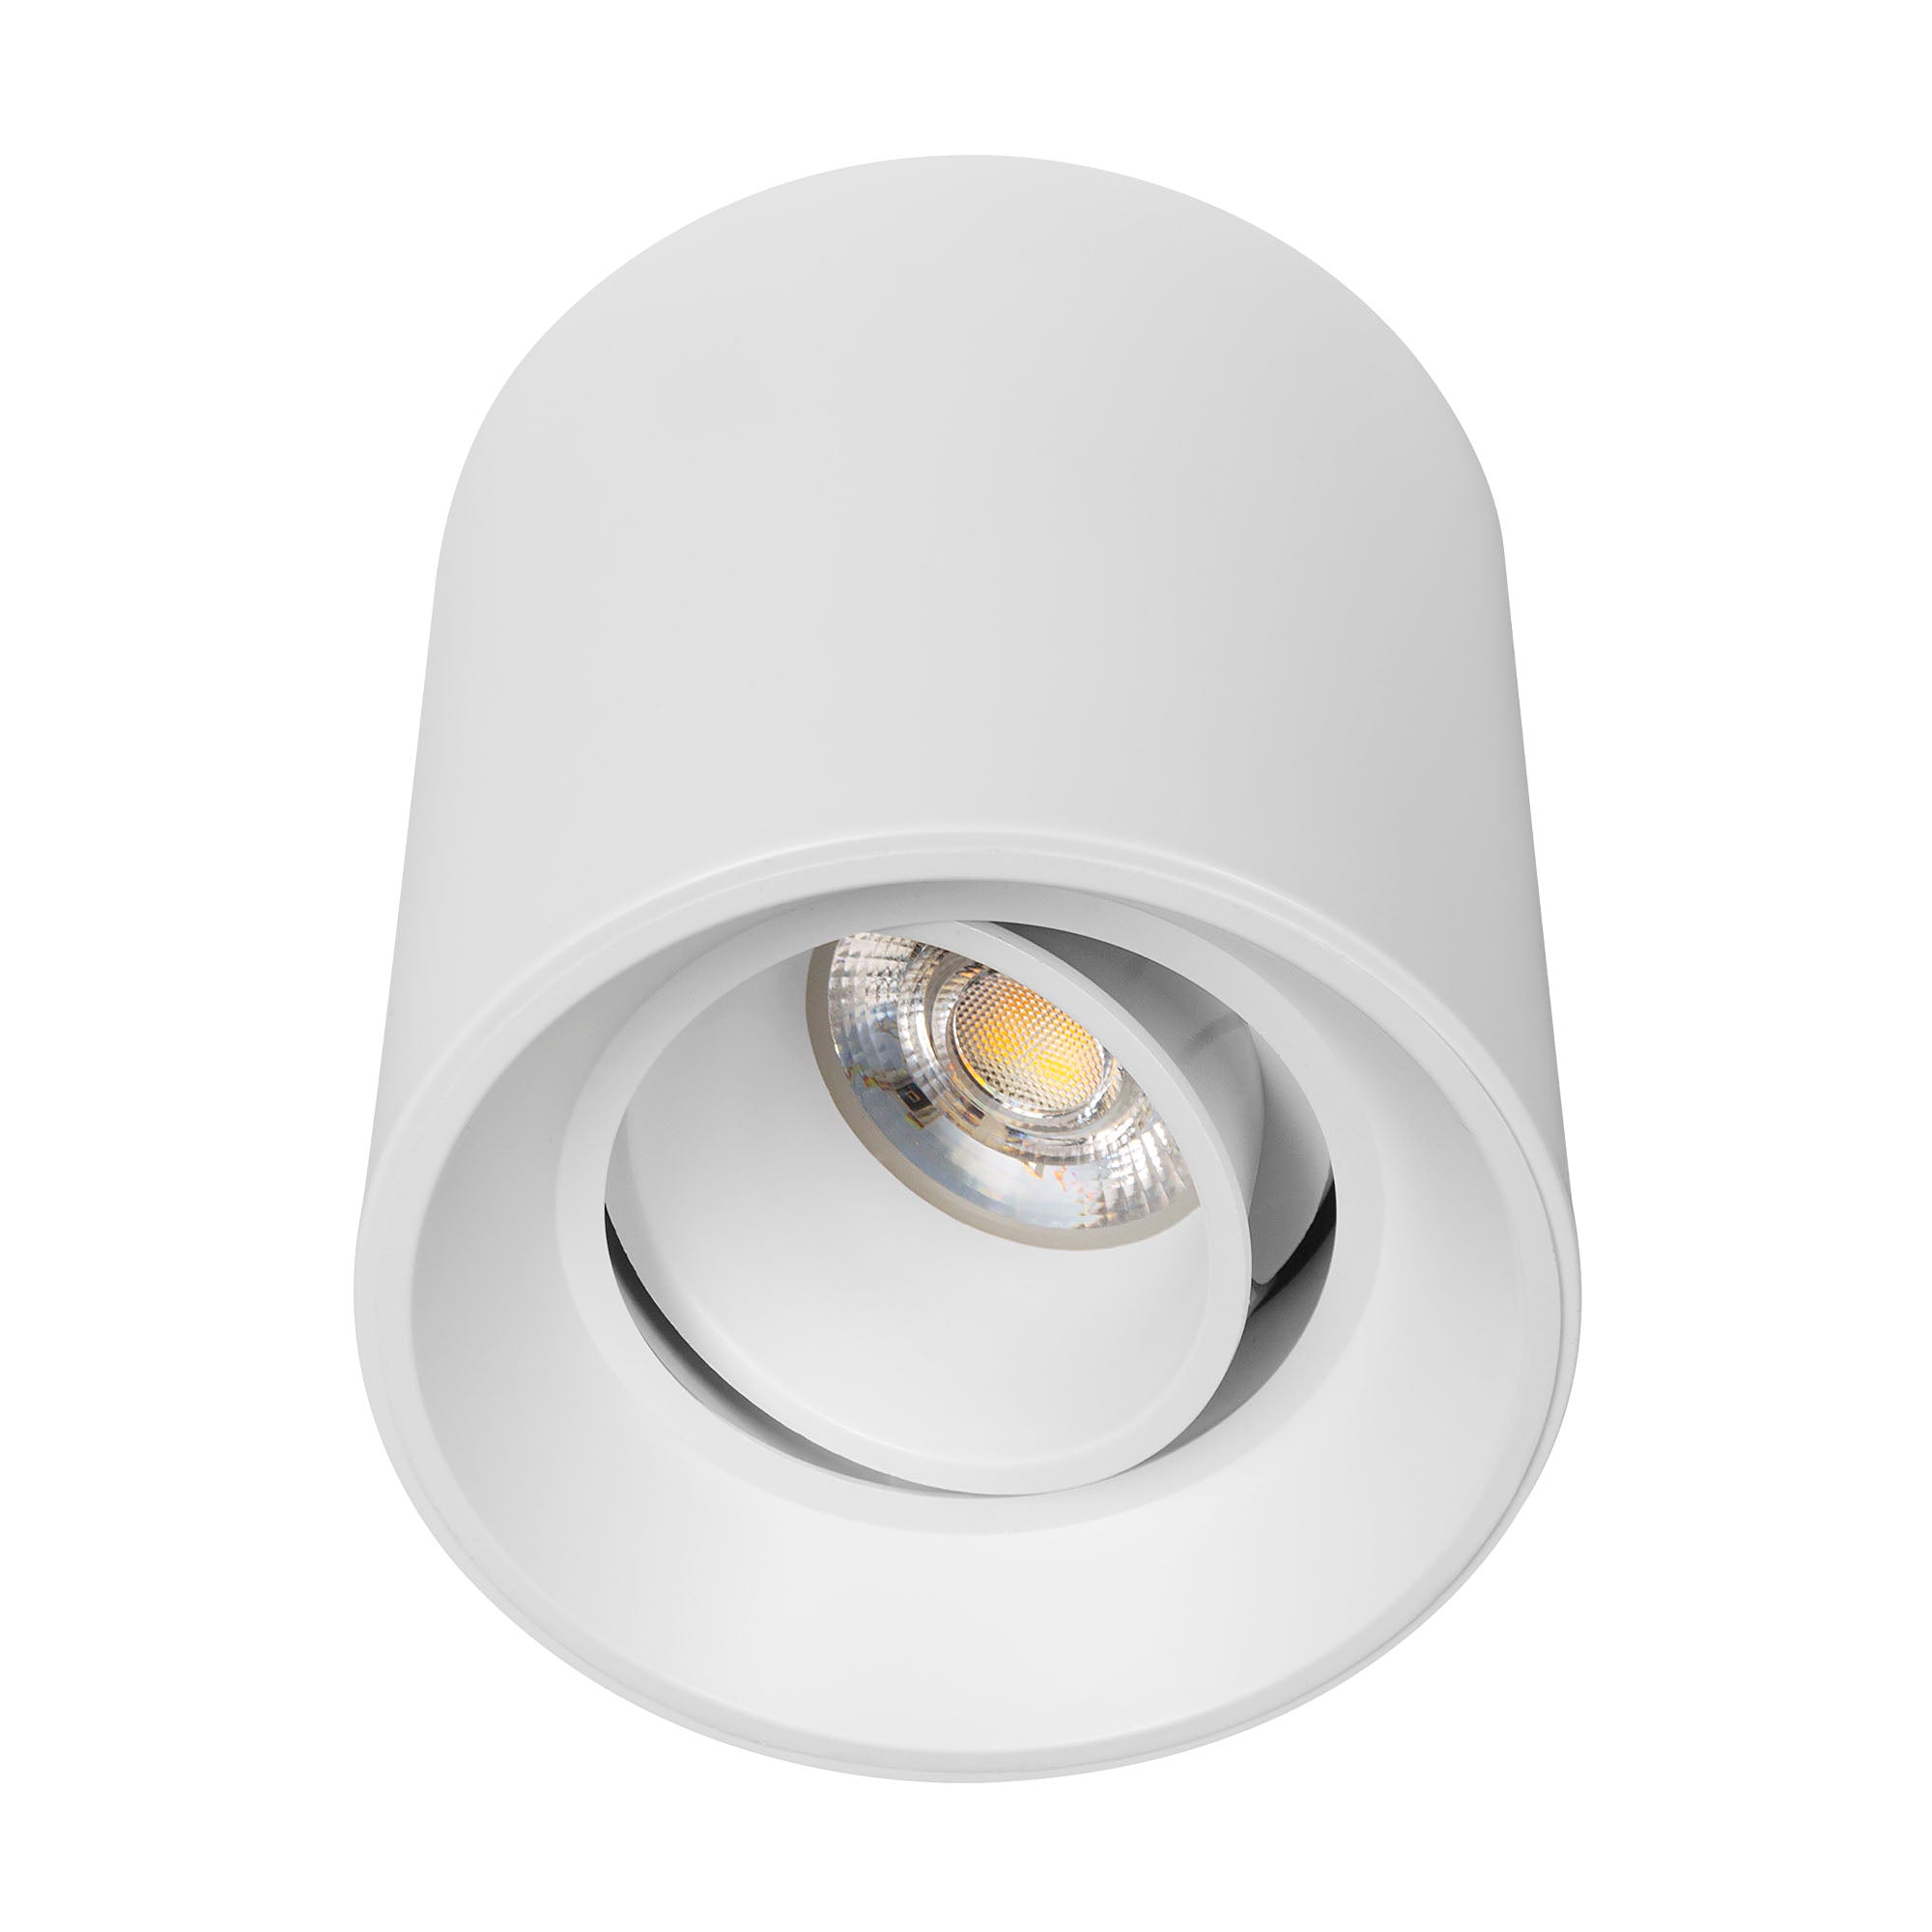 Luminario downlight LED redondo dirigible para sobreponer en techo Modelo TL-2916 Illux